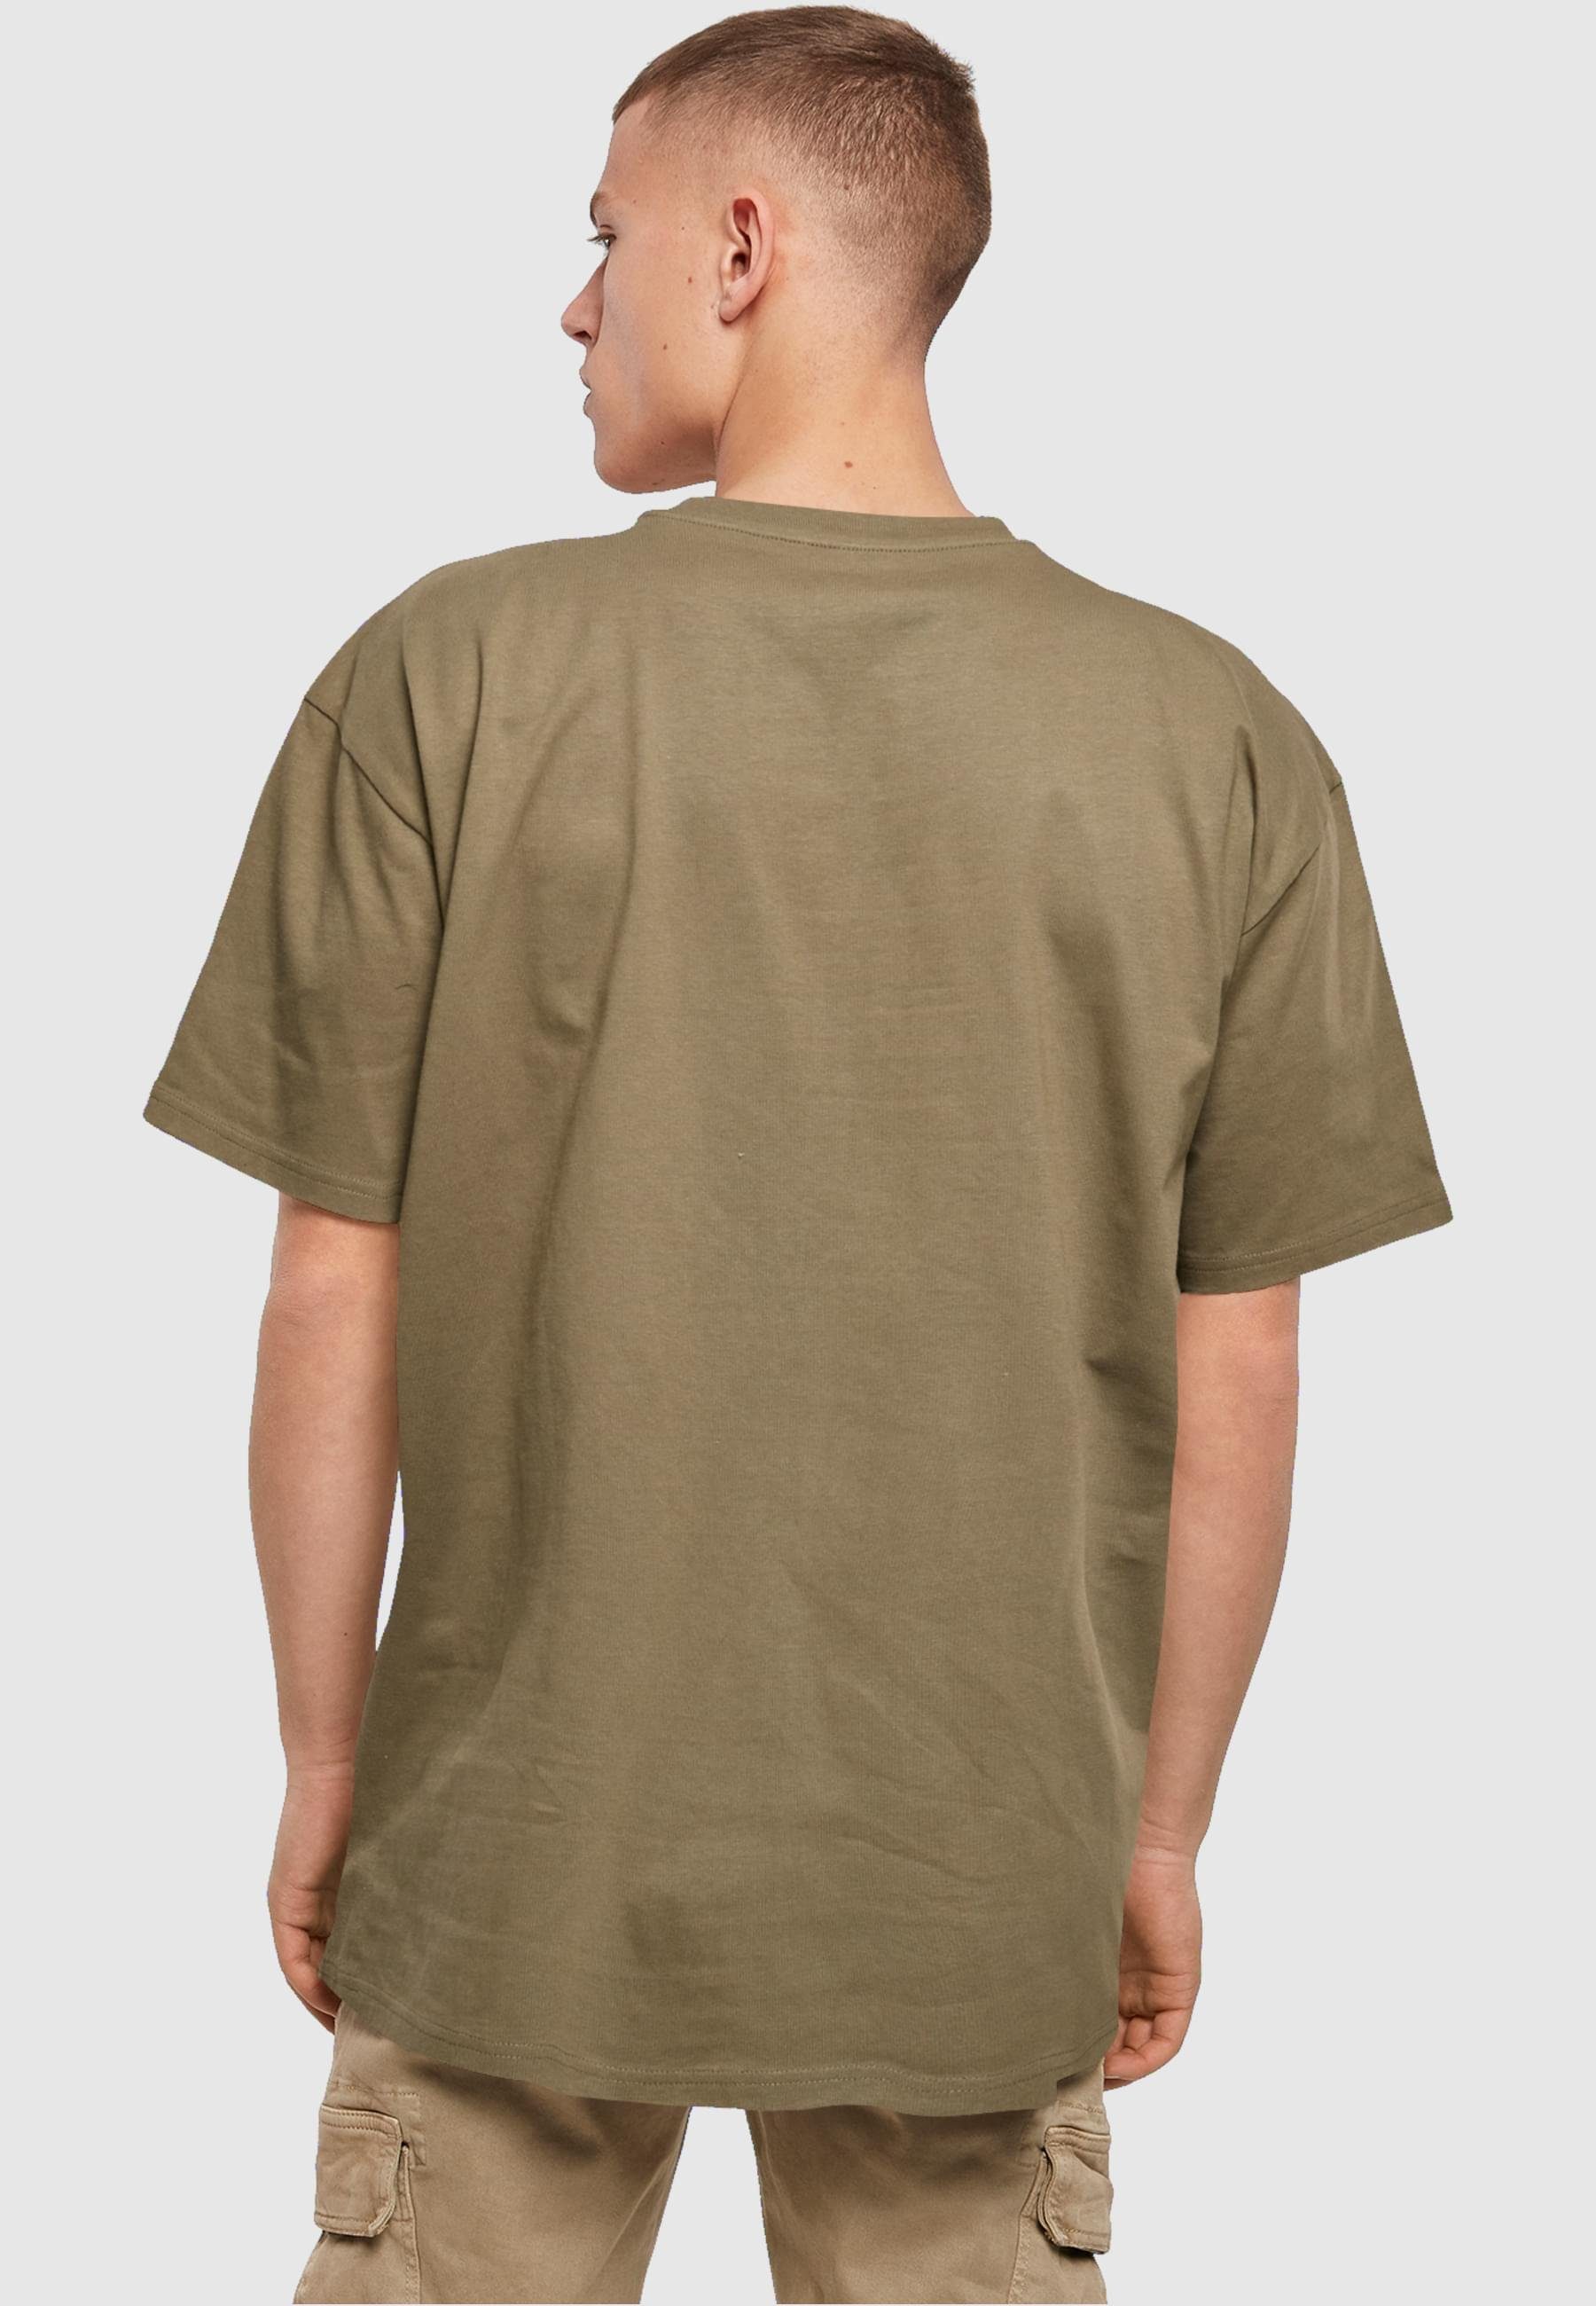 X T-Shirt Tee olive Dance (1-tlg) Merchcode Oversize Herren Layla